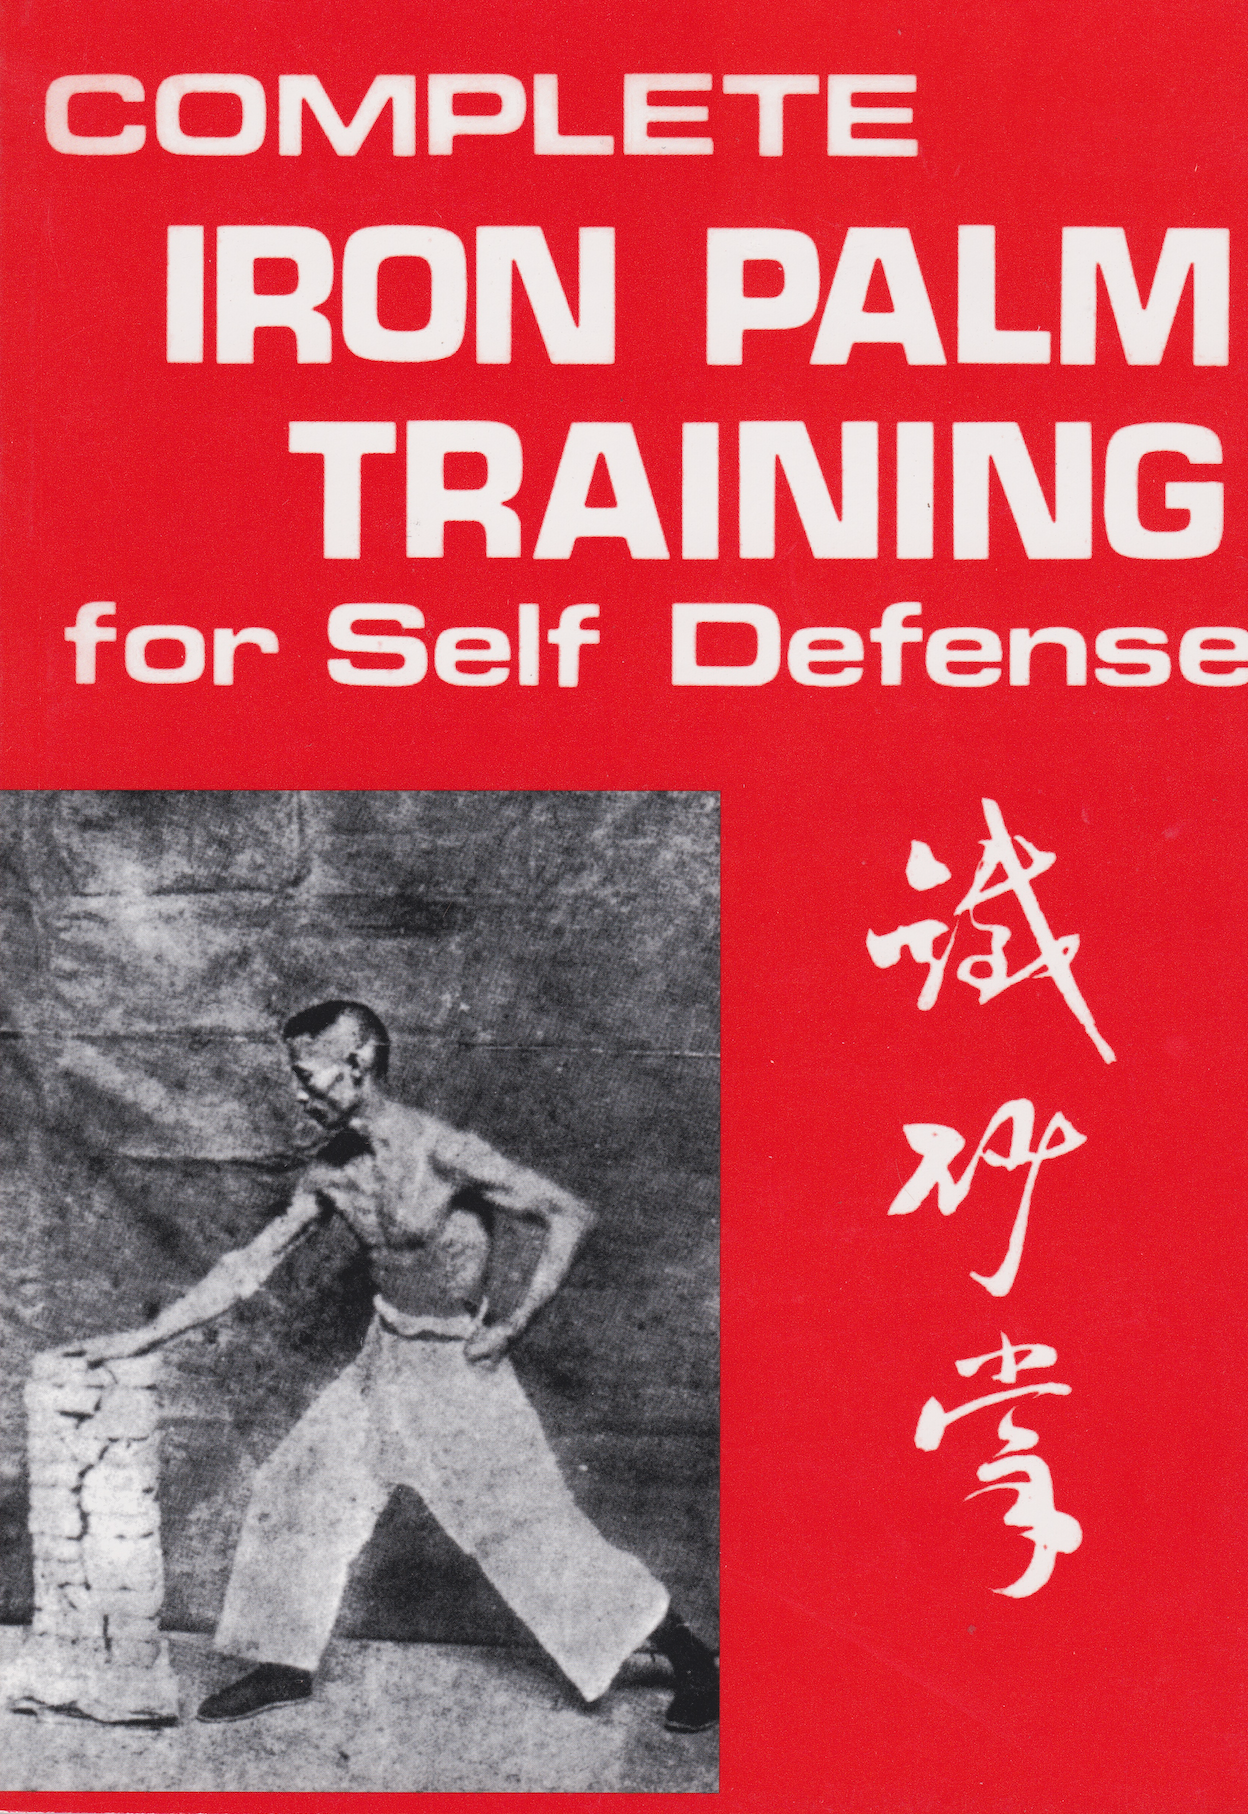 チャオHC著『アイアン・パーム・トレーニング・フォー・セルフ・ディフェンス』本を完成